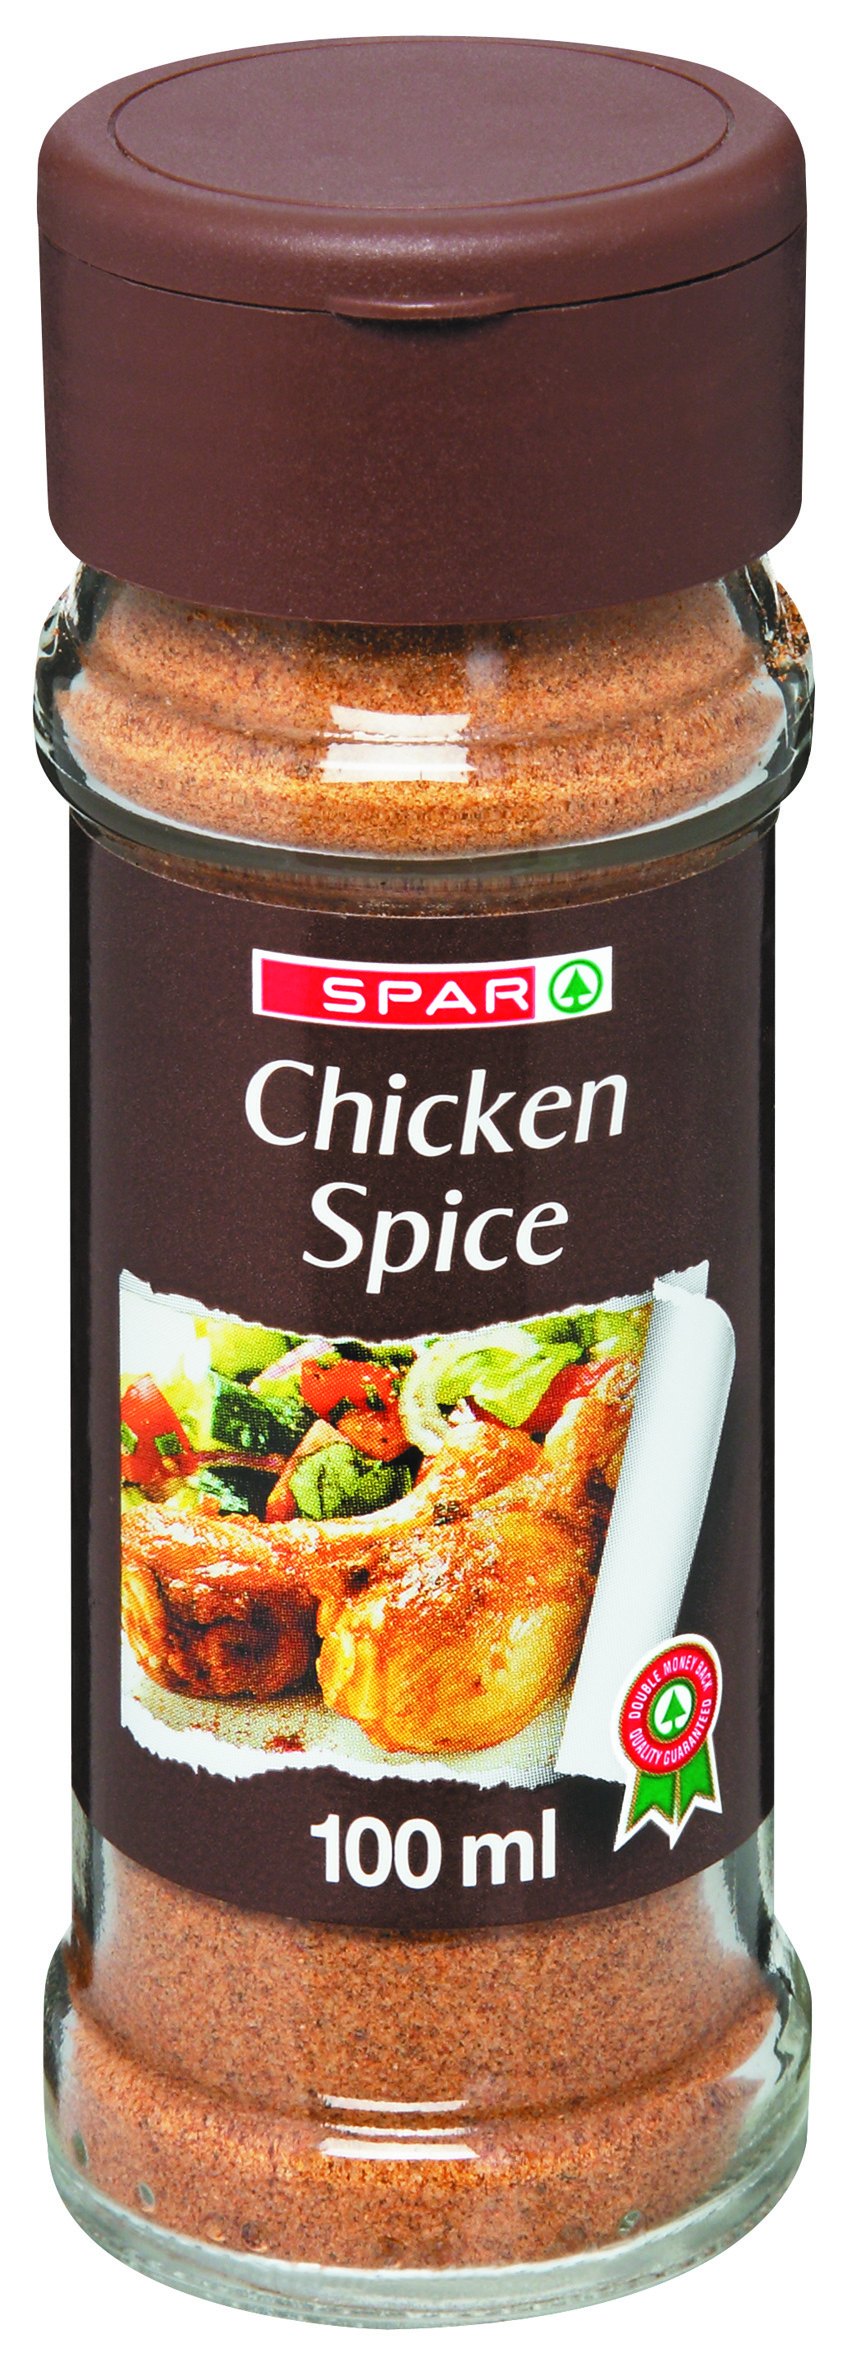 chicken spice